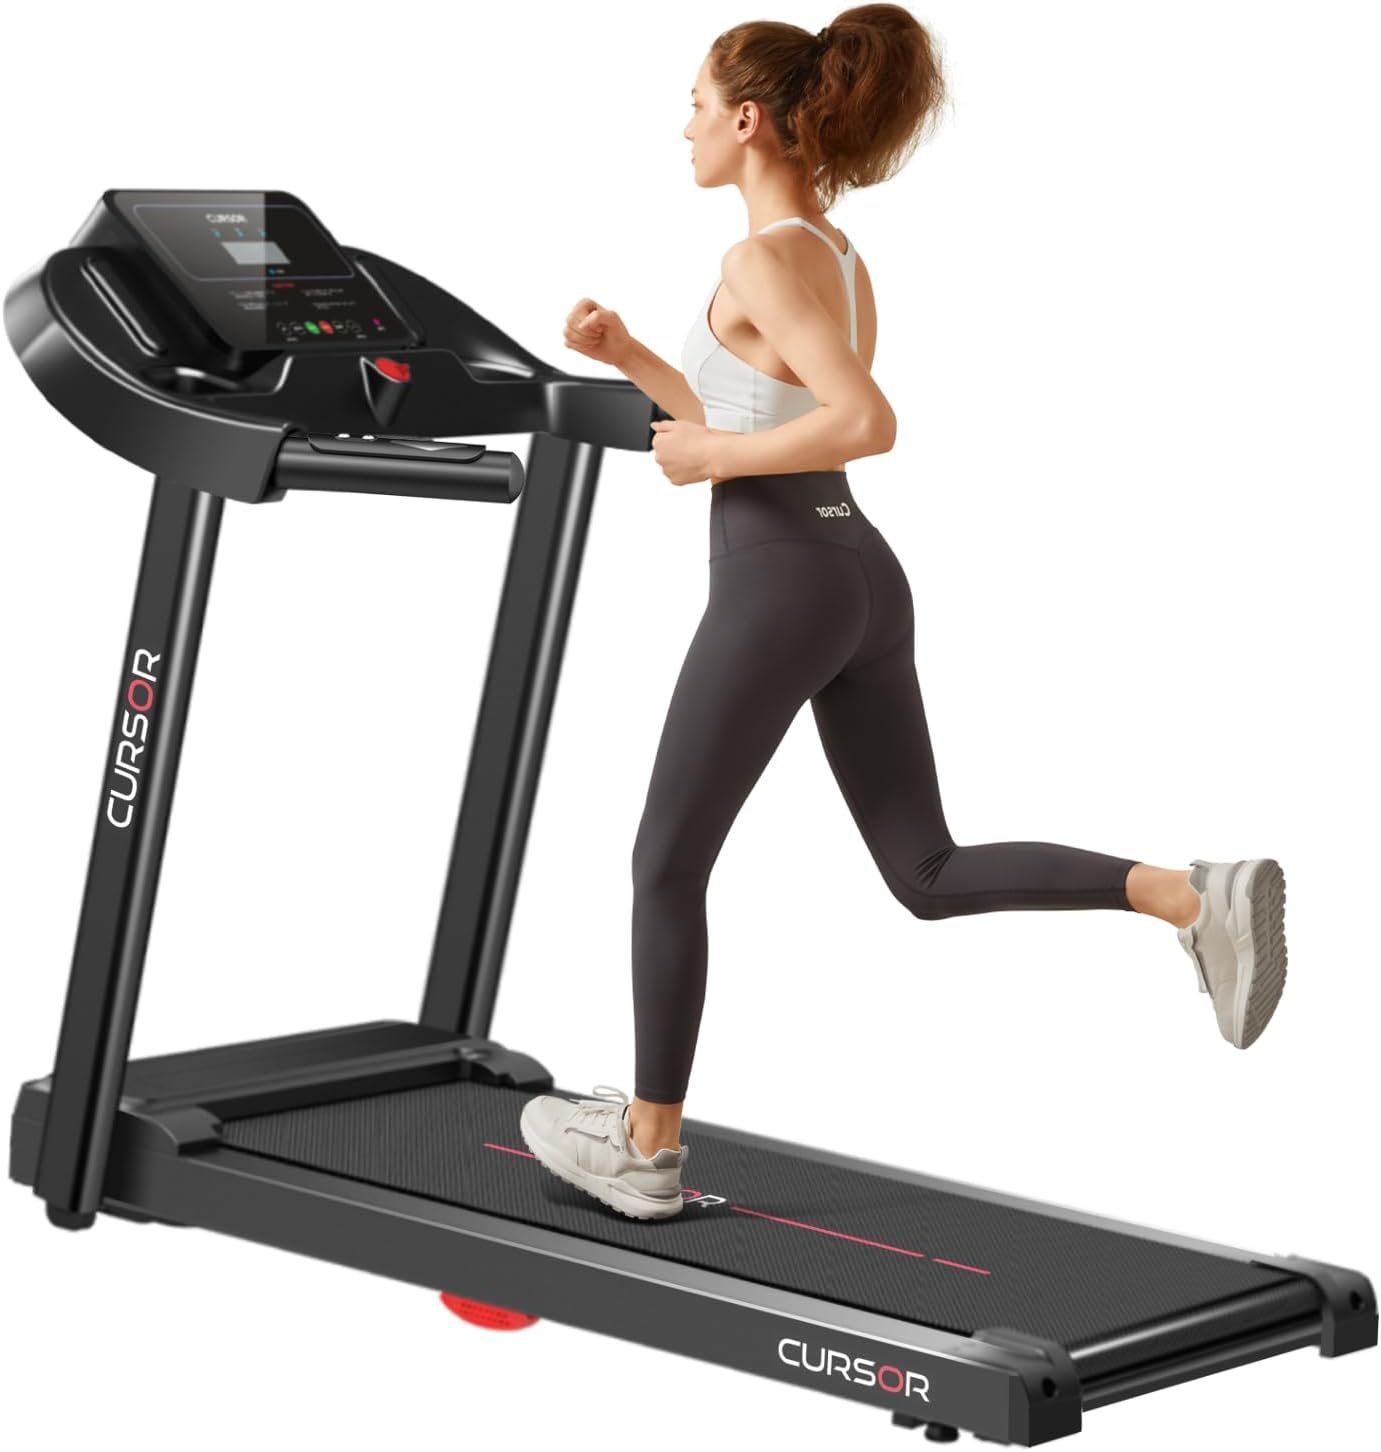 cursor fitness treadmill